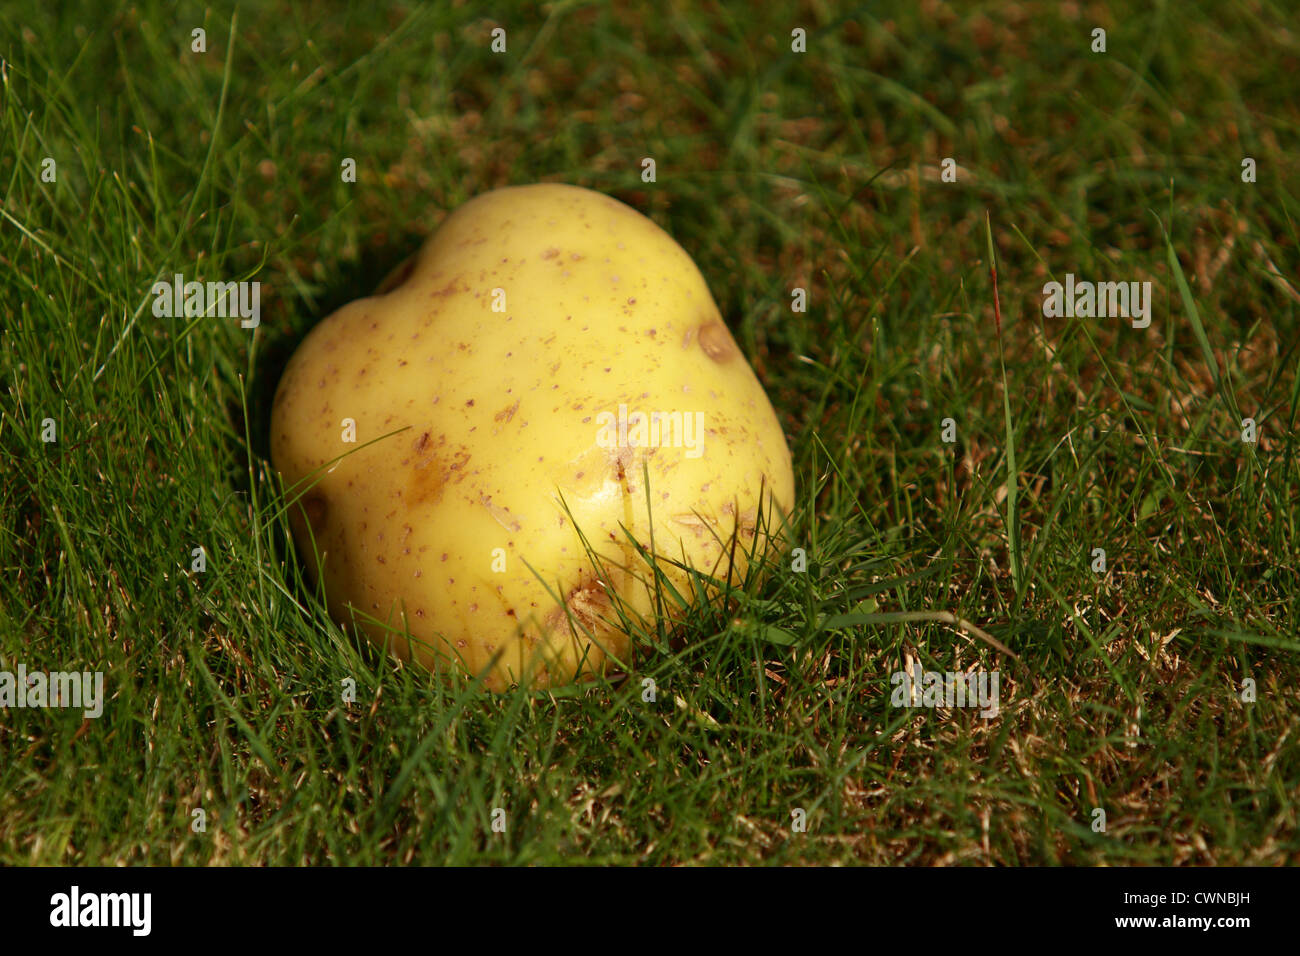 Una patata sobre el césped Foto de stock